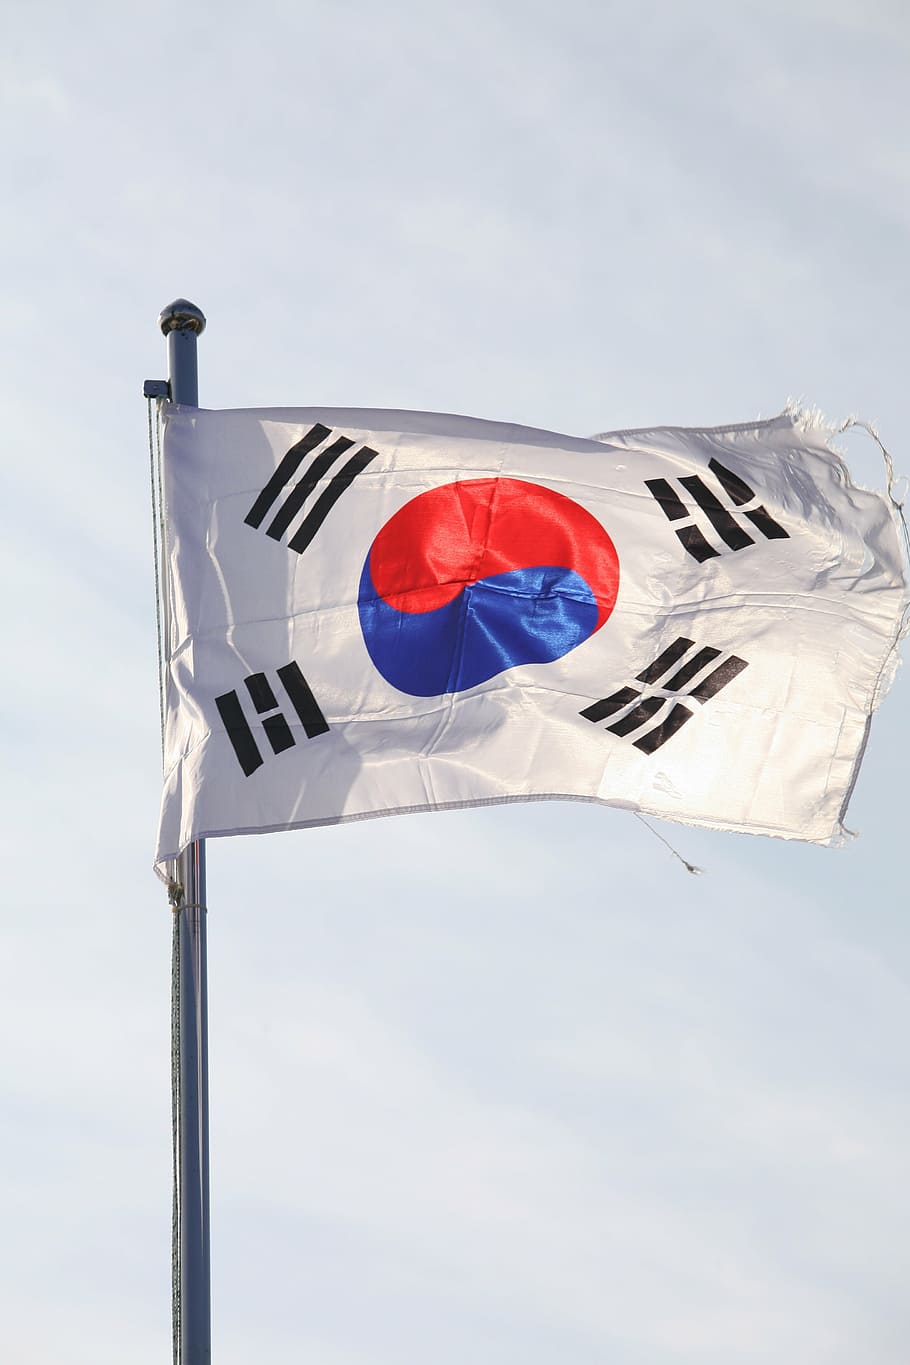 flag of Korea, julia roberts, north summit flag, republic of korea, HD wallpaper